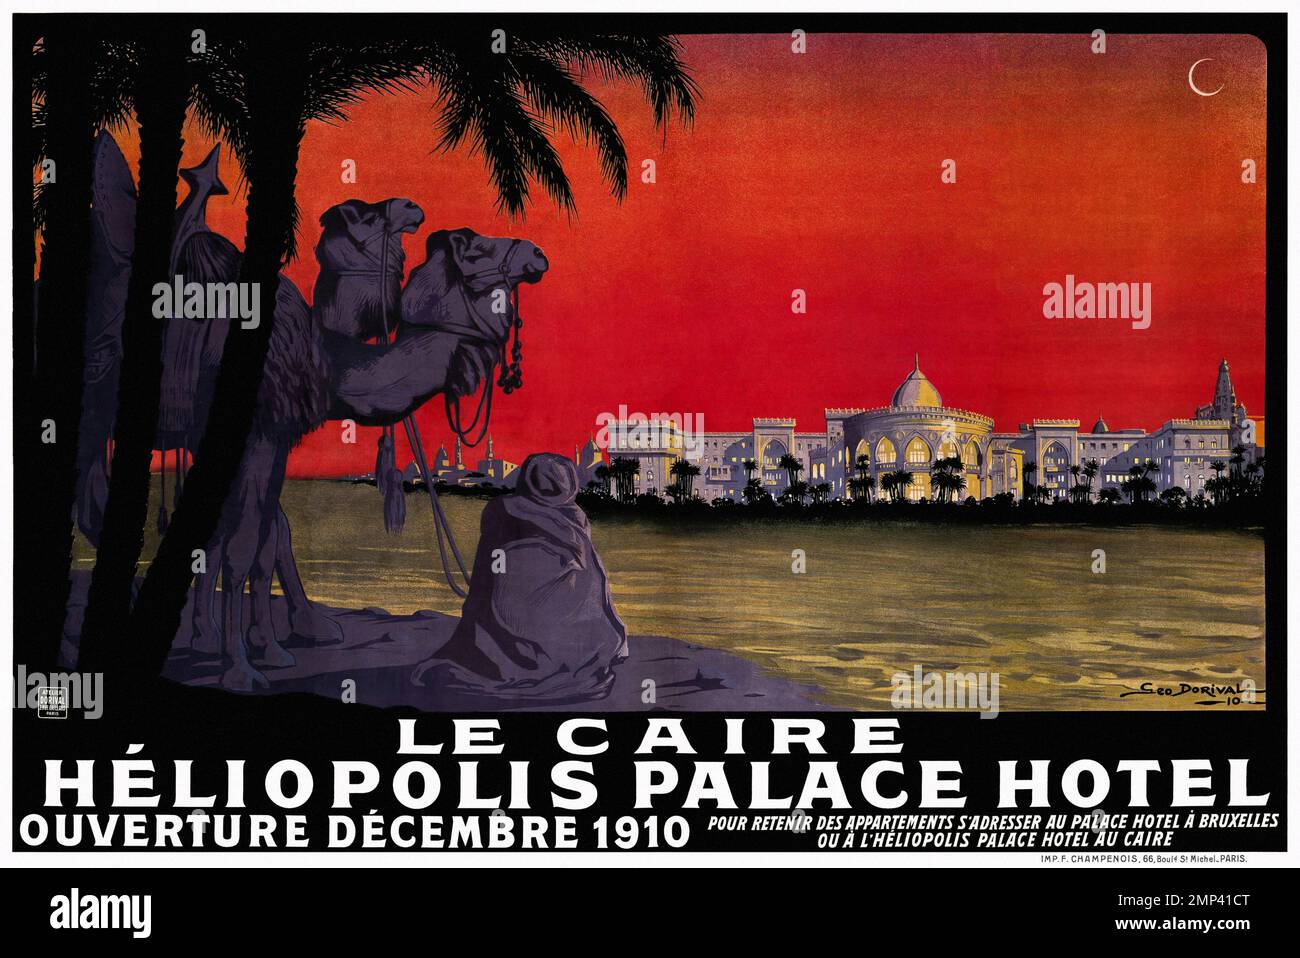 Le Caire. Héliopolis Palace Hôtel. Ouverture de décembre par Geo Dorival (1879-1968). Affiche publiée en 1910 en France. Banque D'Images